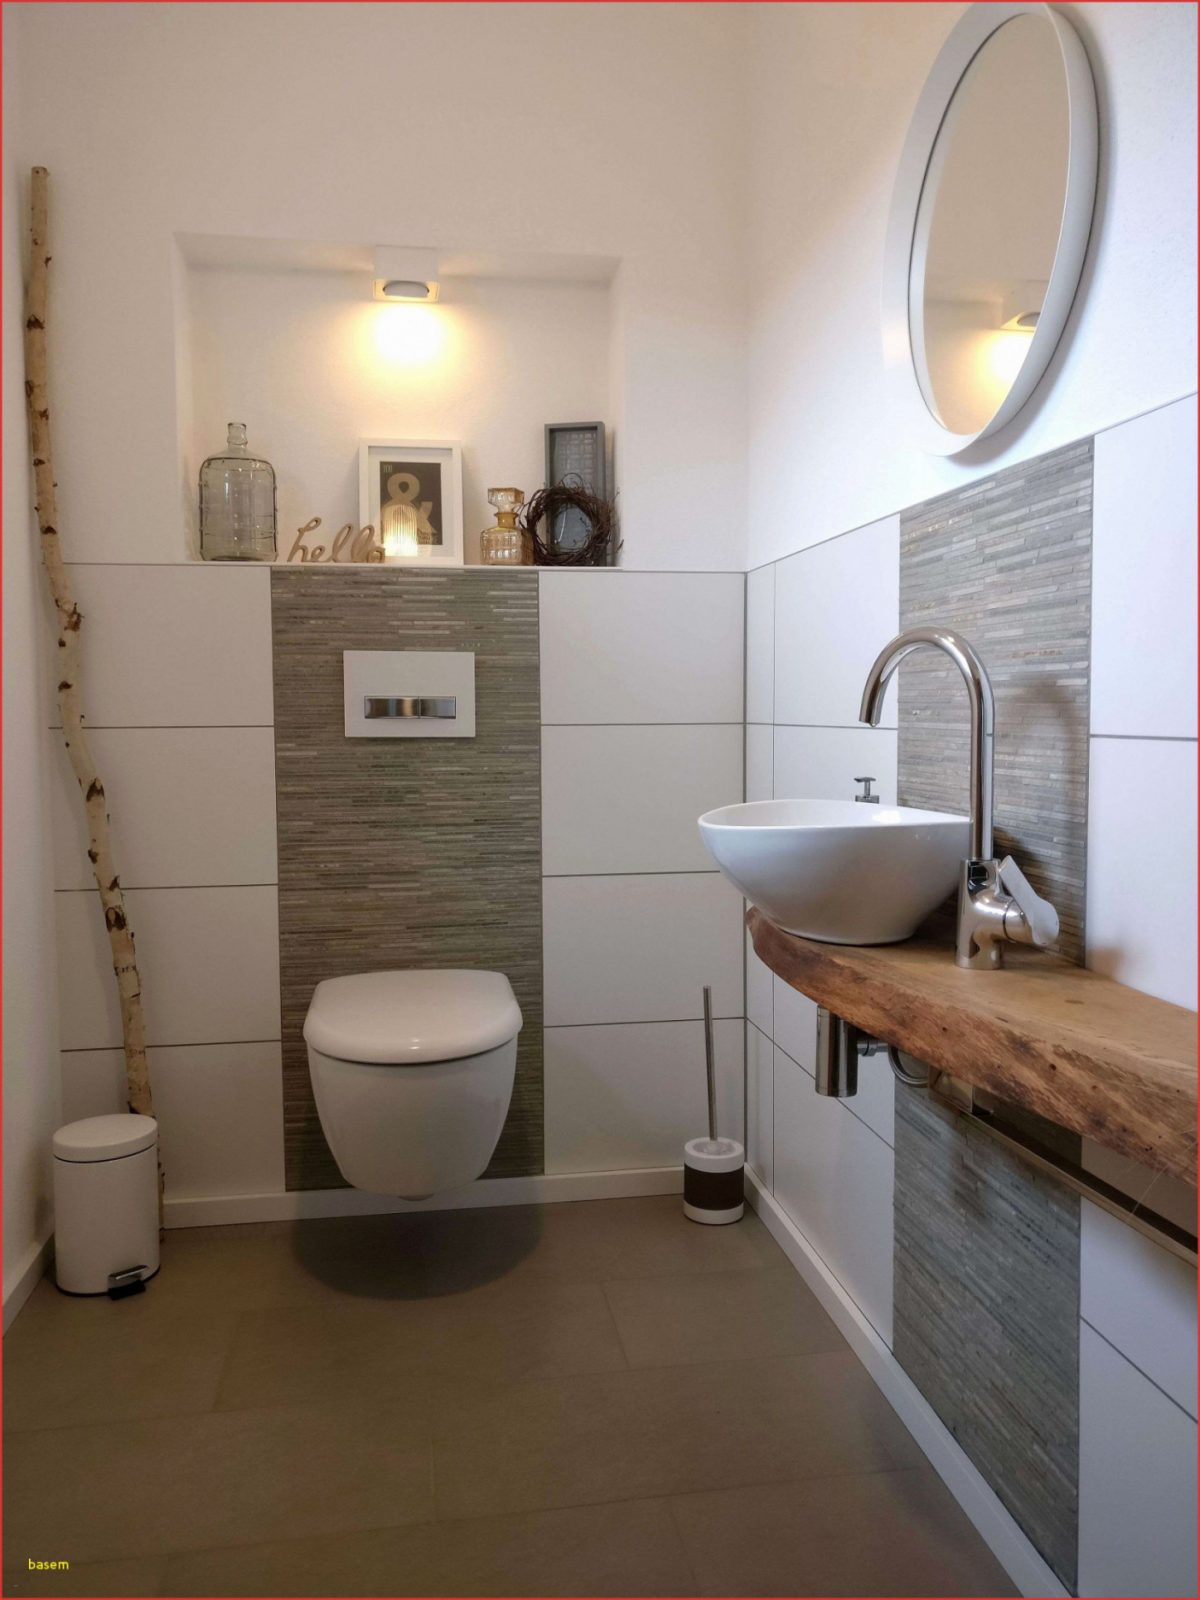 36 Inspirierend Kleines Badezimmer Einrichten von Fliesen Kleines Badezimmer Ideen Bild